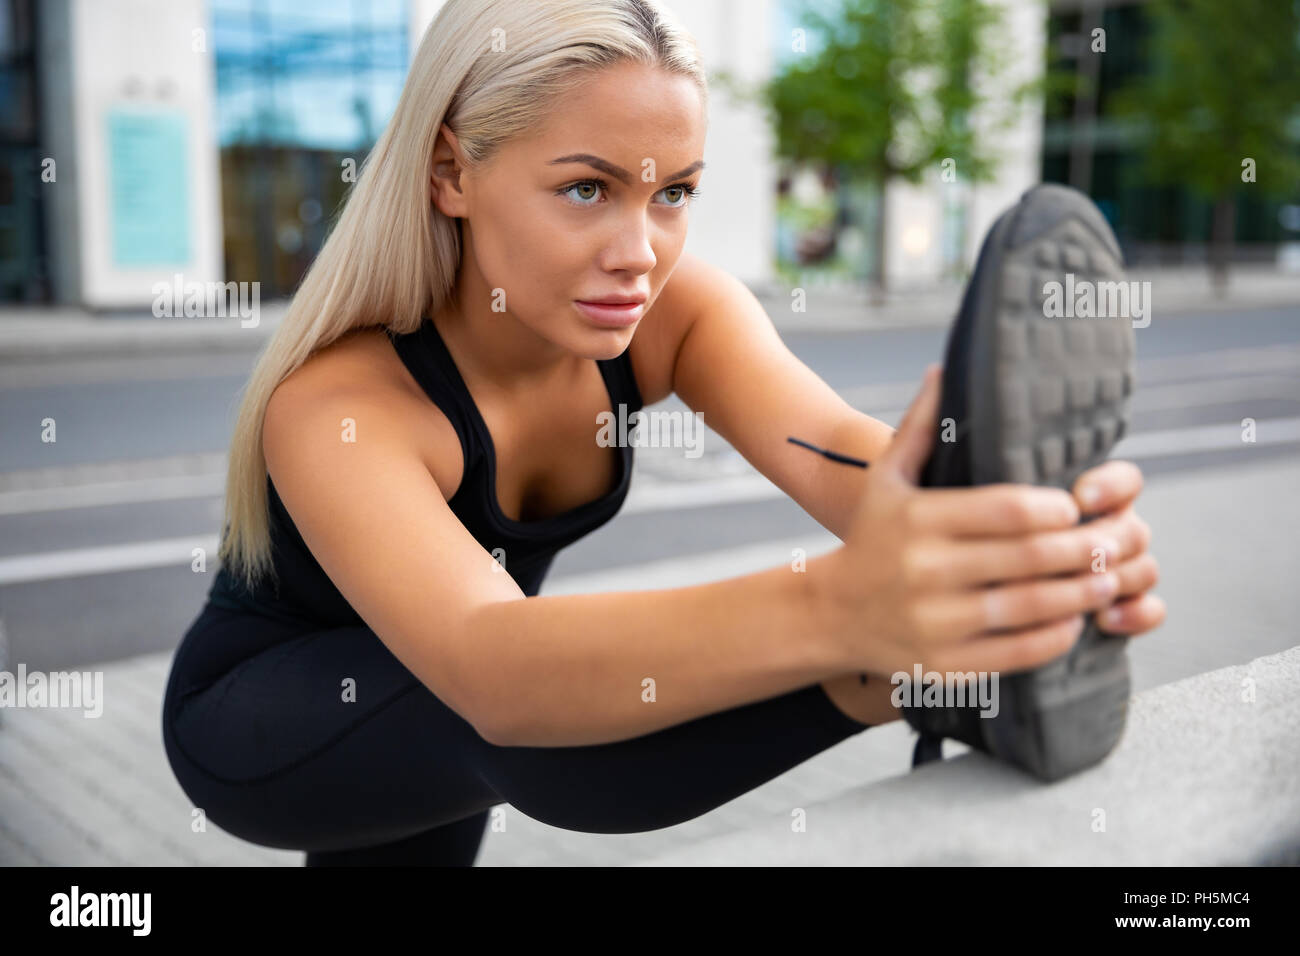 Determinata la donna facendo esercizio di stretching alla ringhiera sul marciapiede Foto Stock